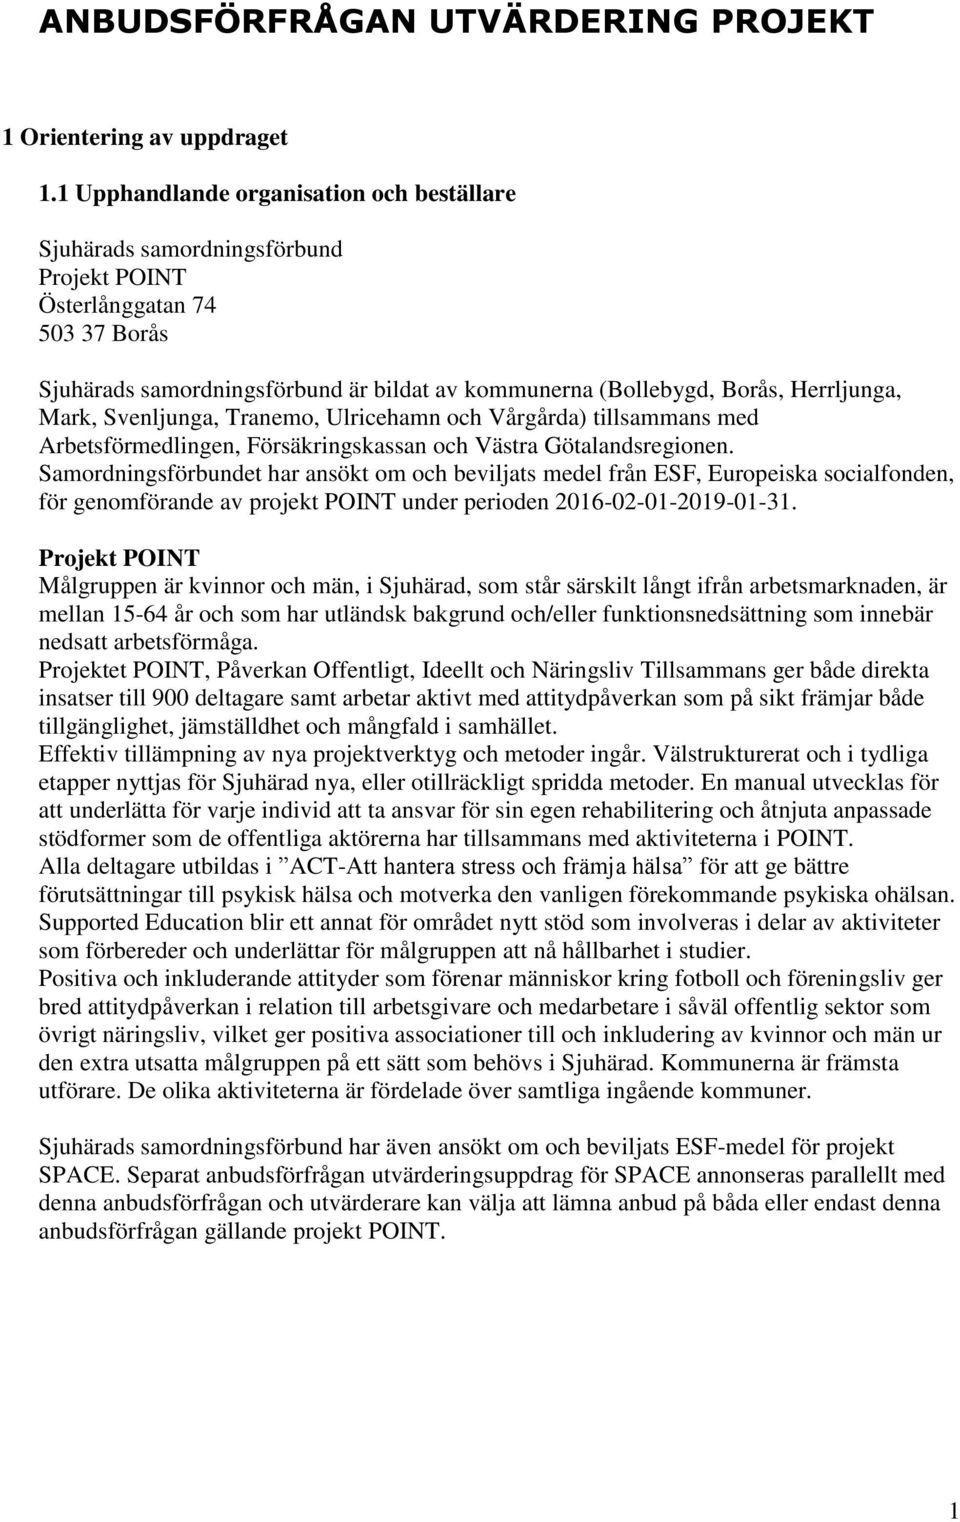 Herrljunga, Mark, Svenljunga, Tranemo, Ulricehamn och Vårgårda) tillsammans med Arbetsförmedlingen, Försäkringskassan och Västra Götalandsregionen.